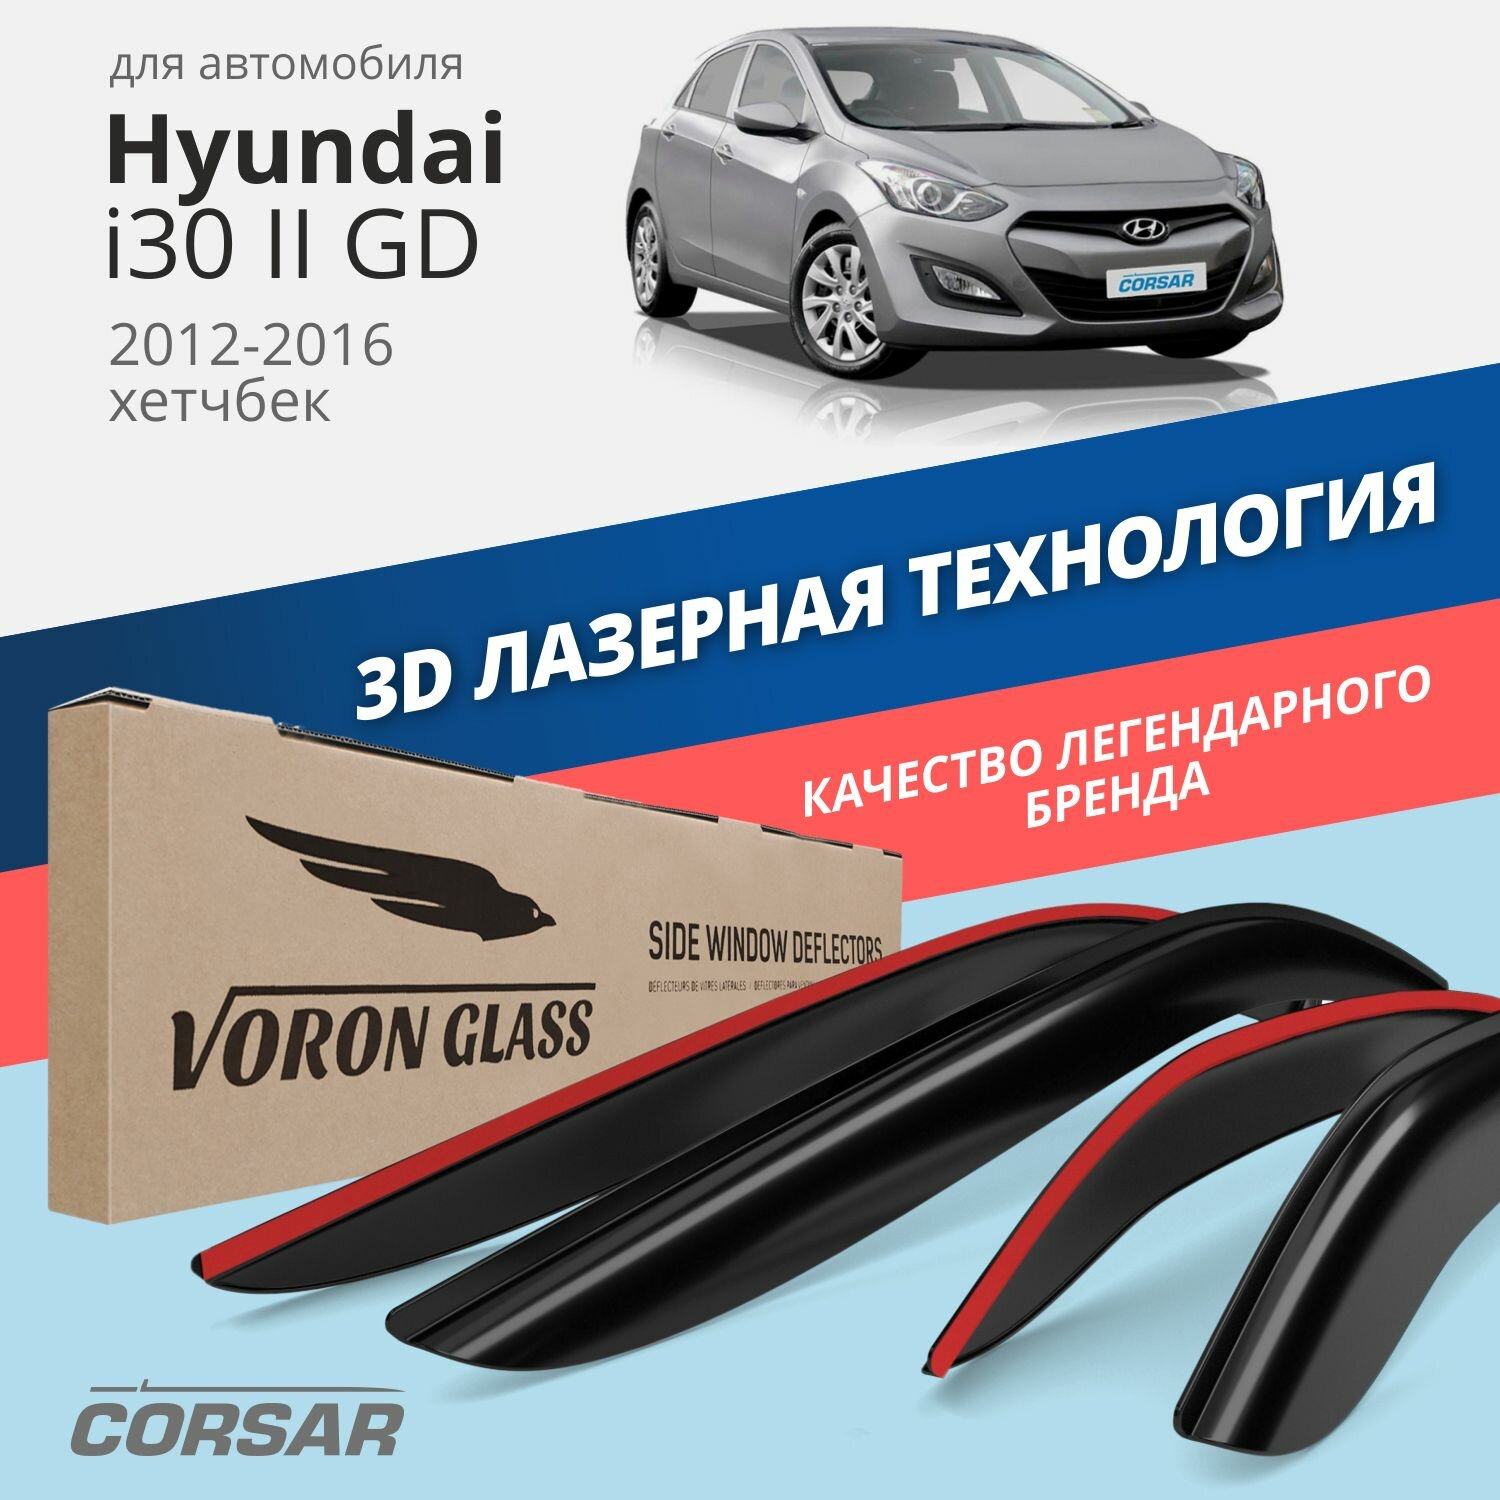 Дефлекторы окон Voron Glass серия Corsar для Hyundai i30 II (GD) 2012-2016 хэтчбек накладные 4 шт.